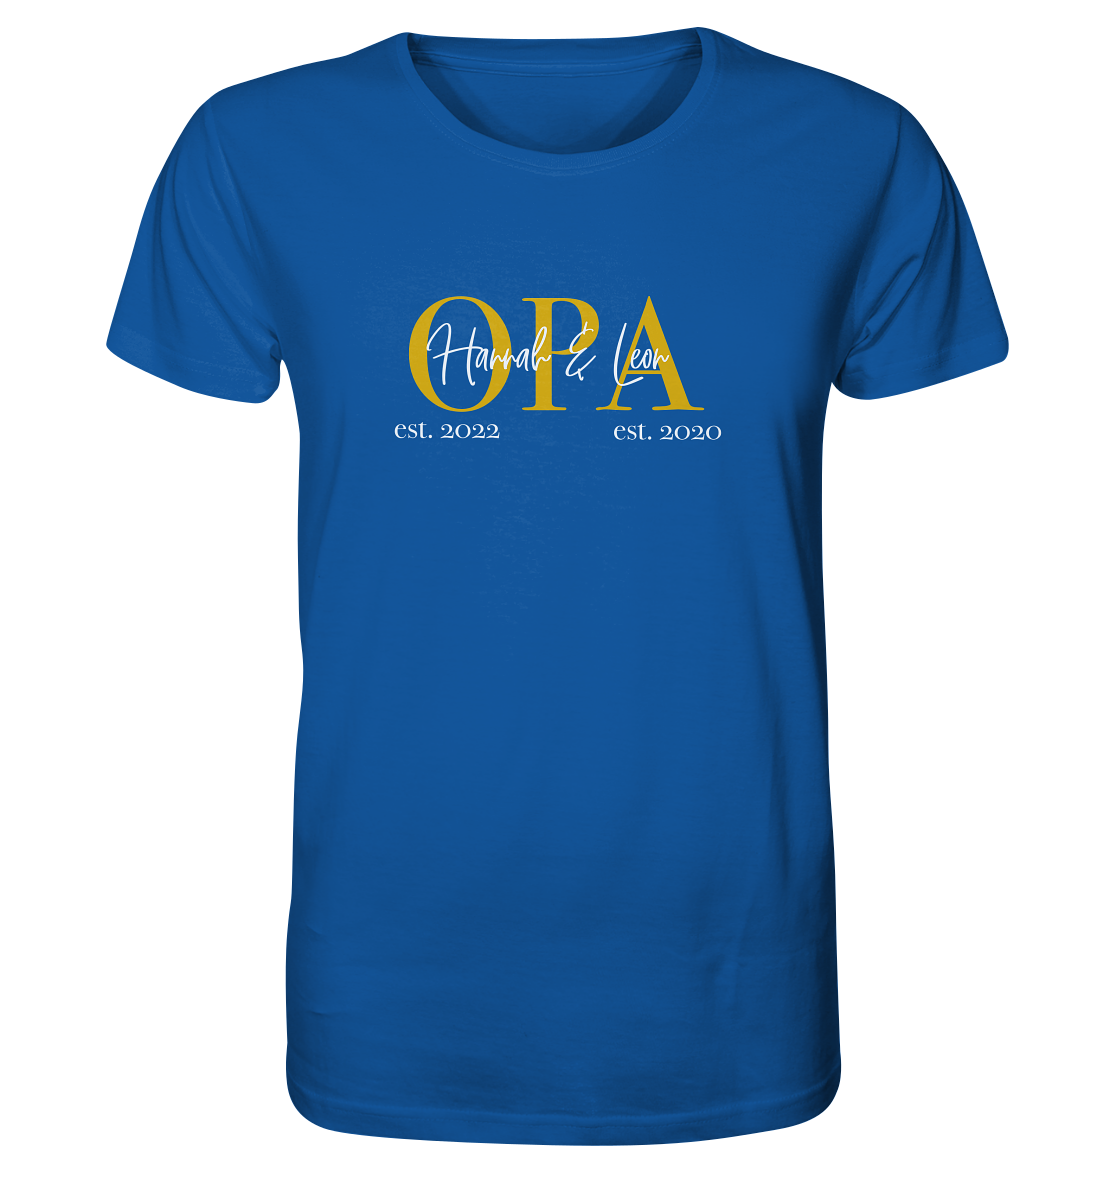 Organic Shirt - Opa Gold